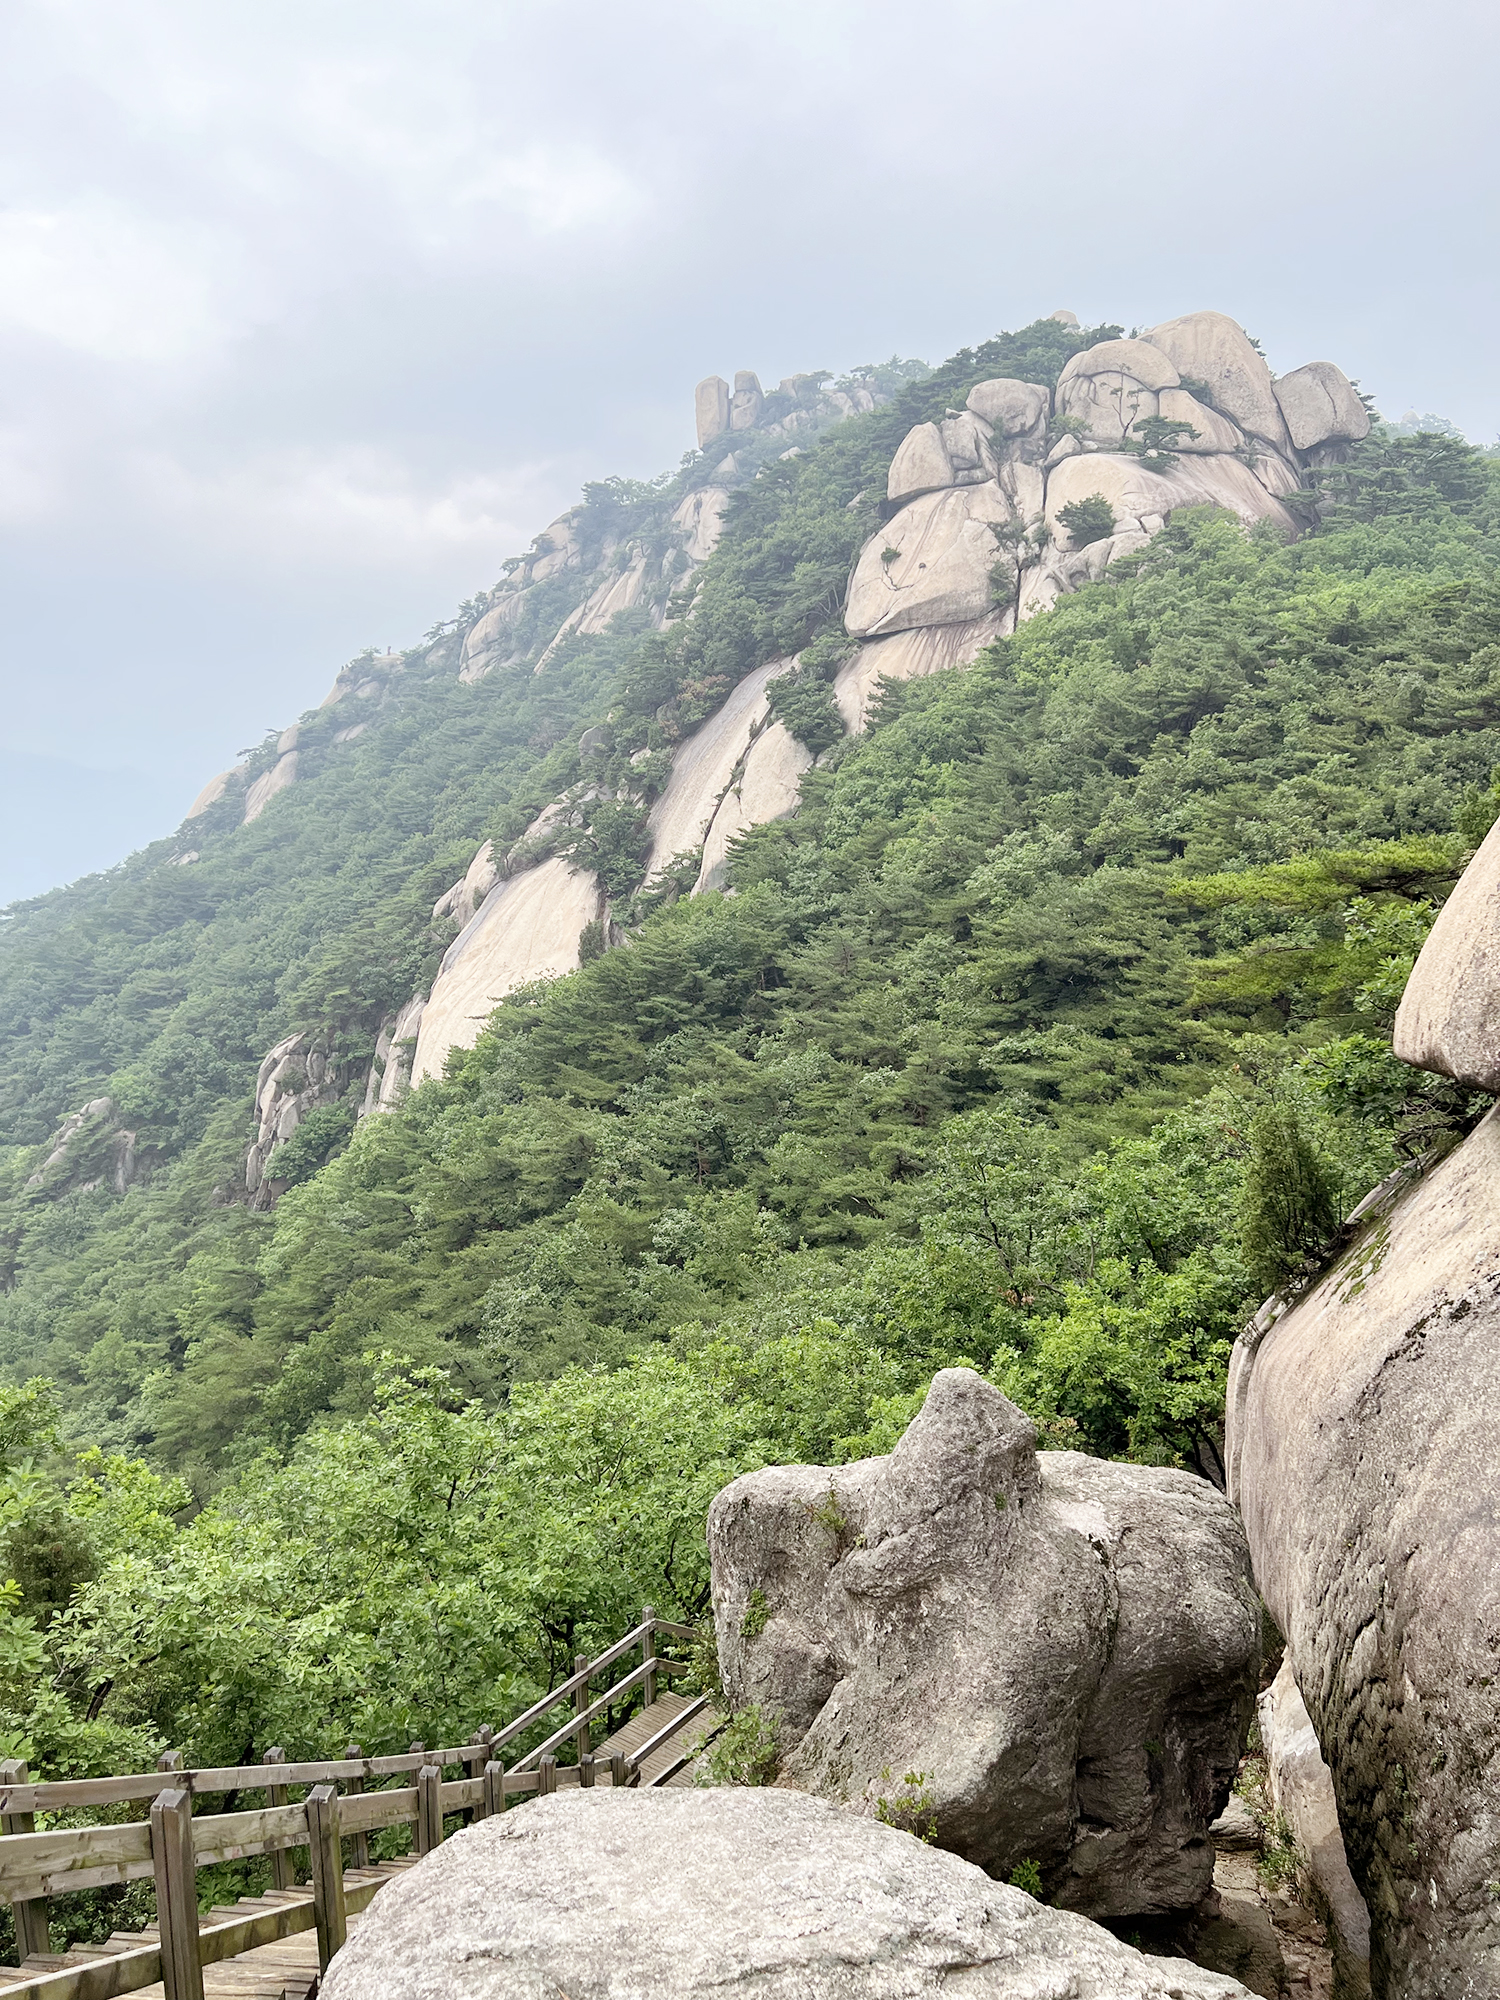 Seoul: Suraksan - På bjergvandring i Sydkorea